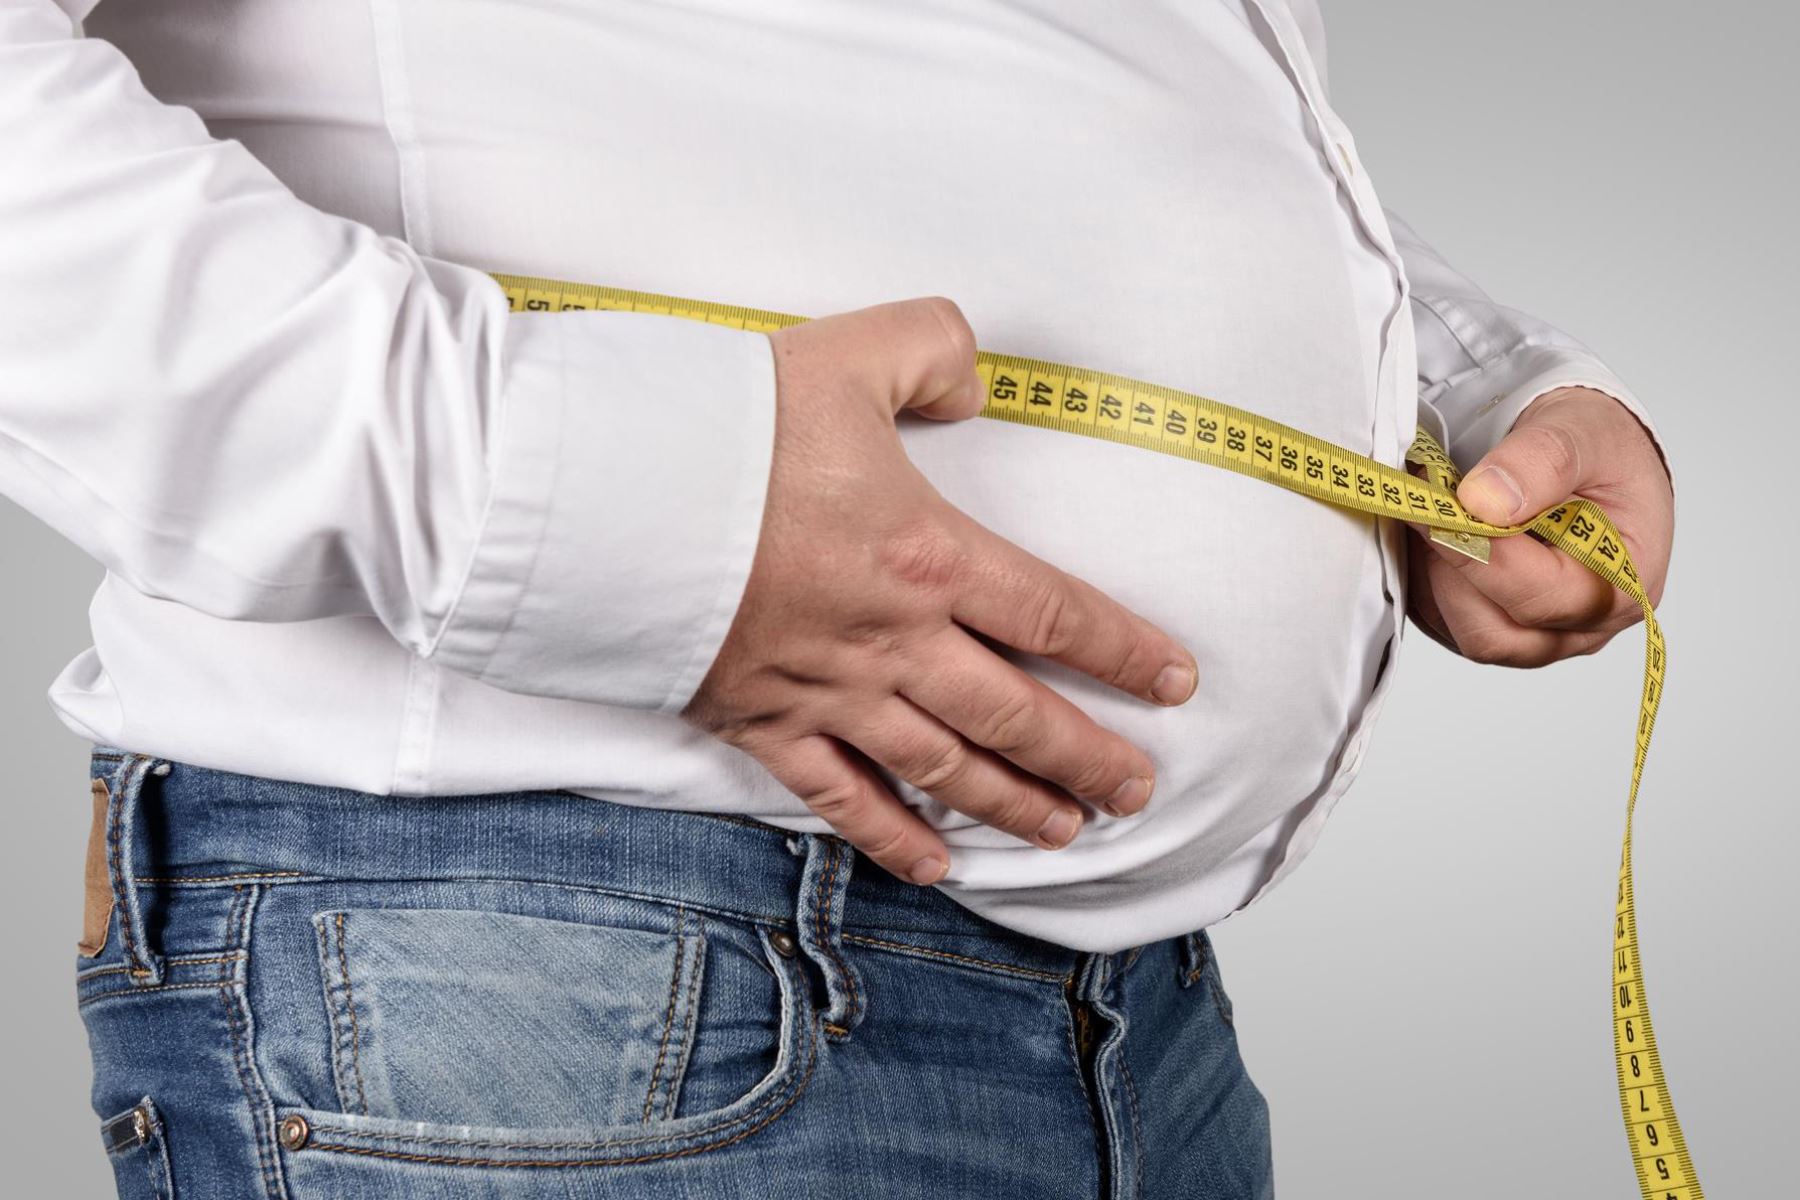 Sobrepeso u obesidad: Cómo calcular el índice de masa corporal por ti mismo